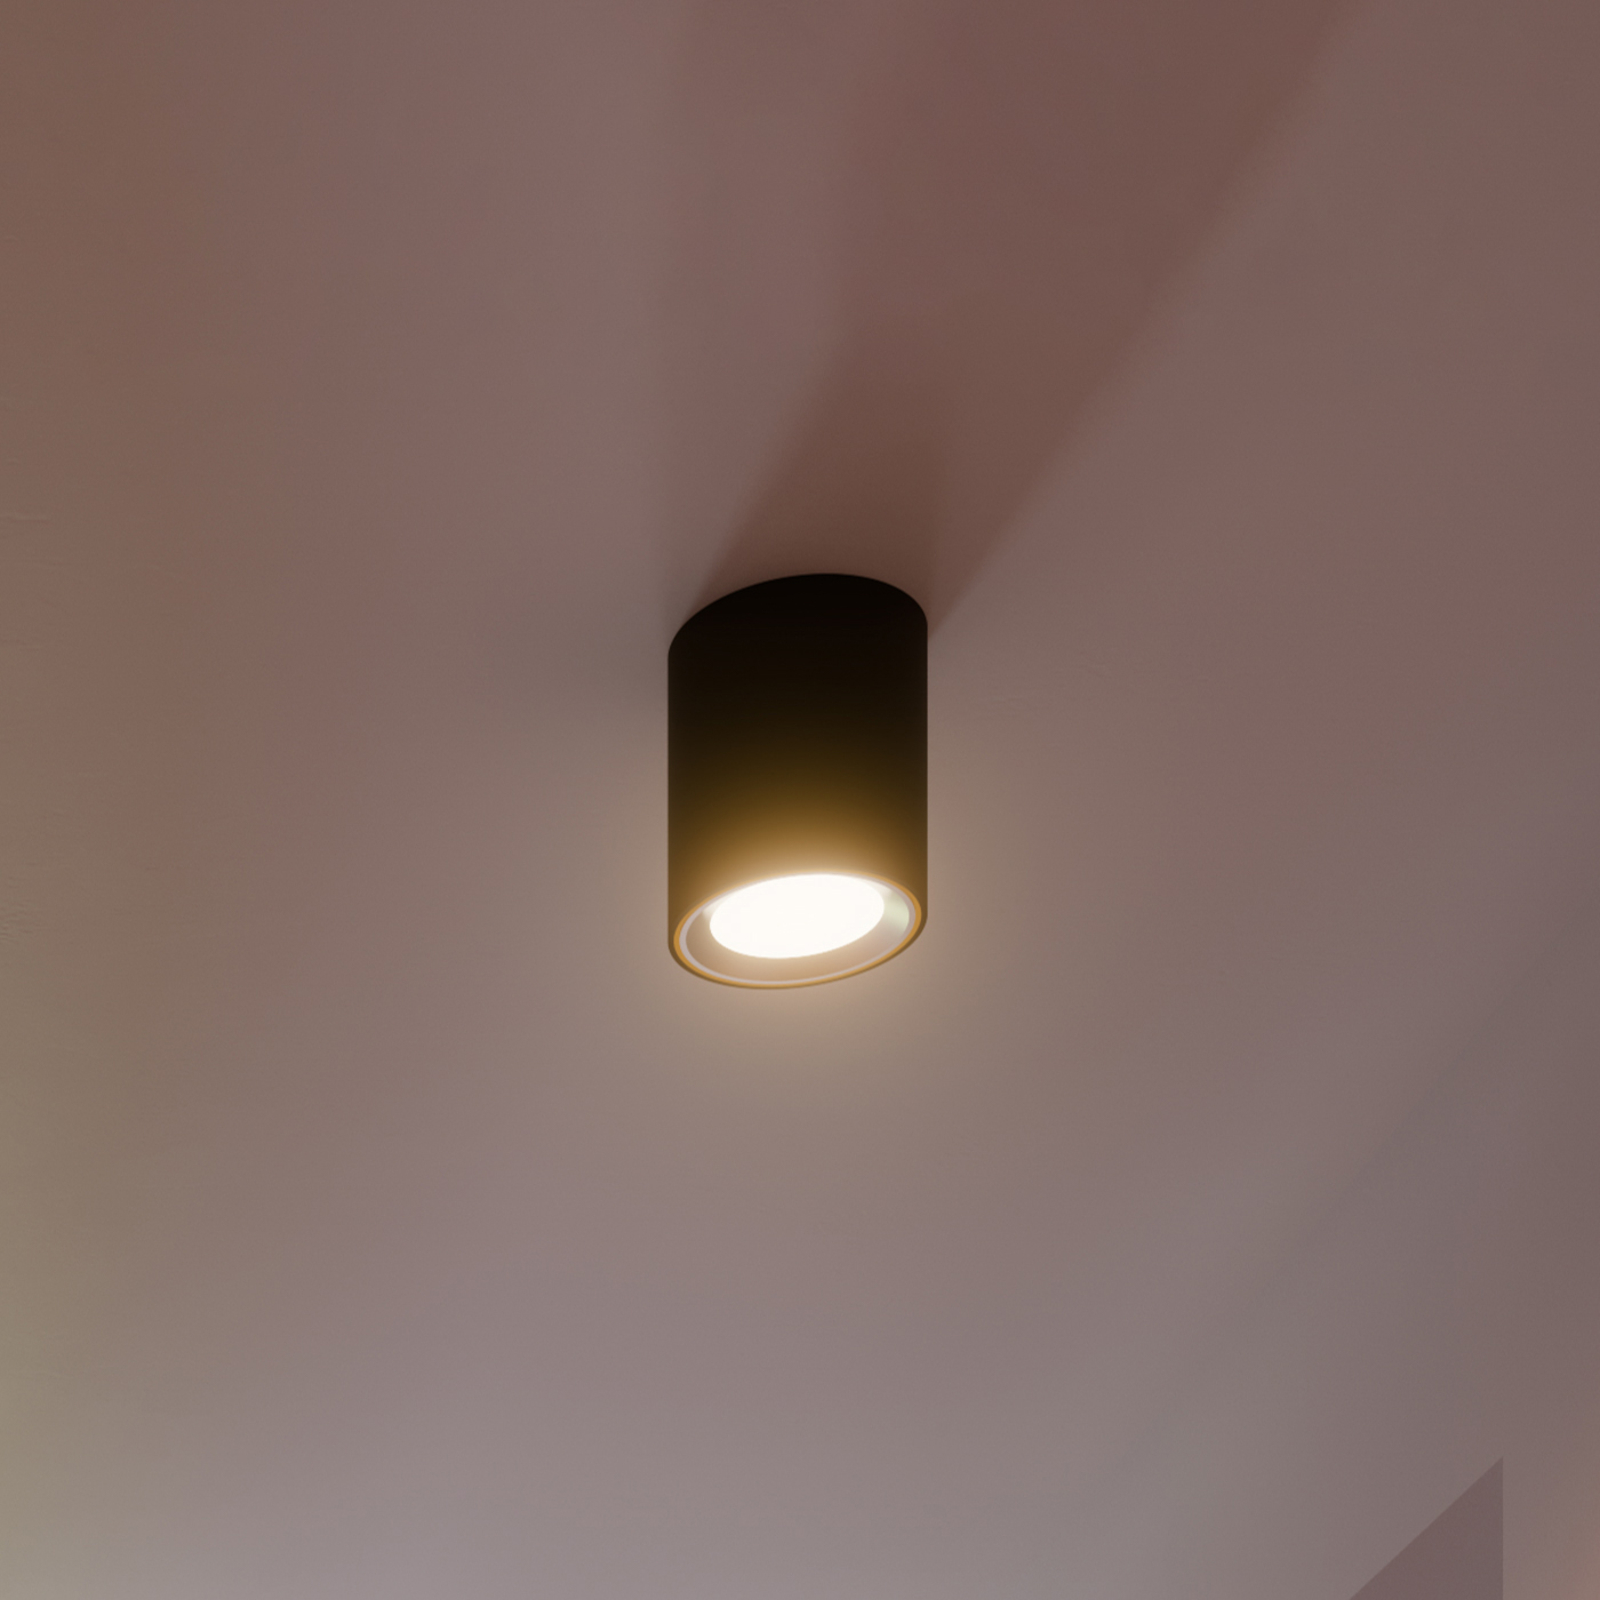 LED spot pour plafond LED Landon Smart, noir, hauteur 14 cm